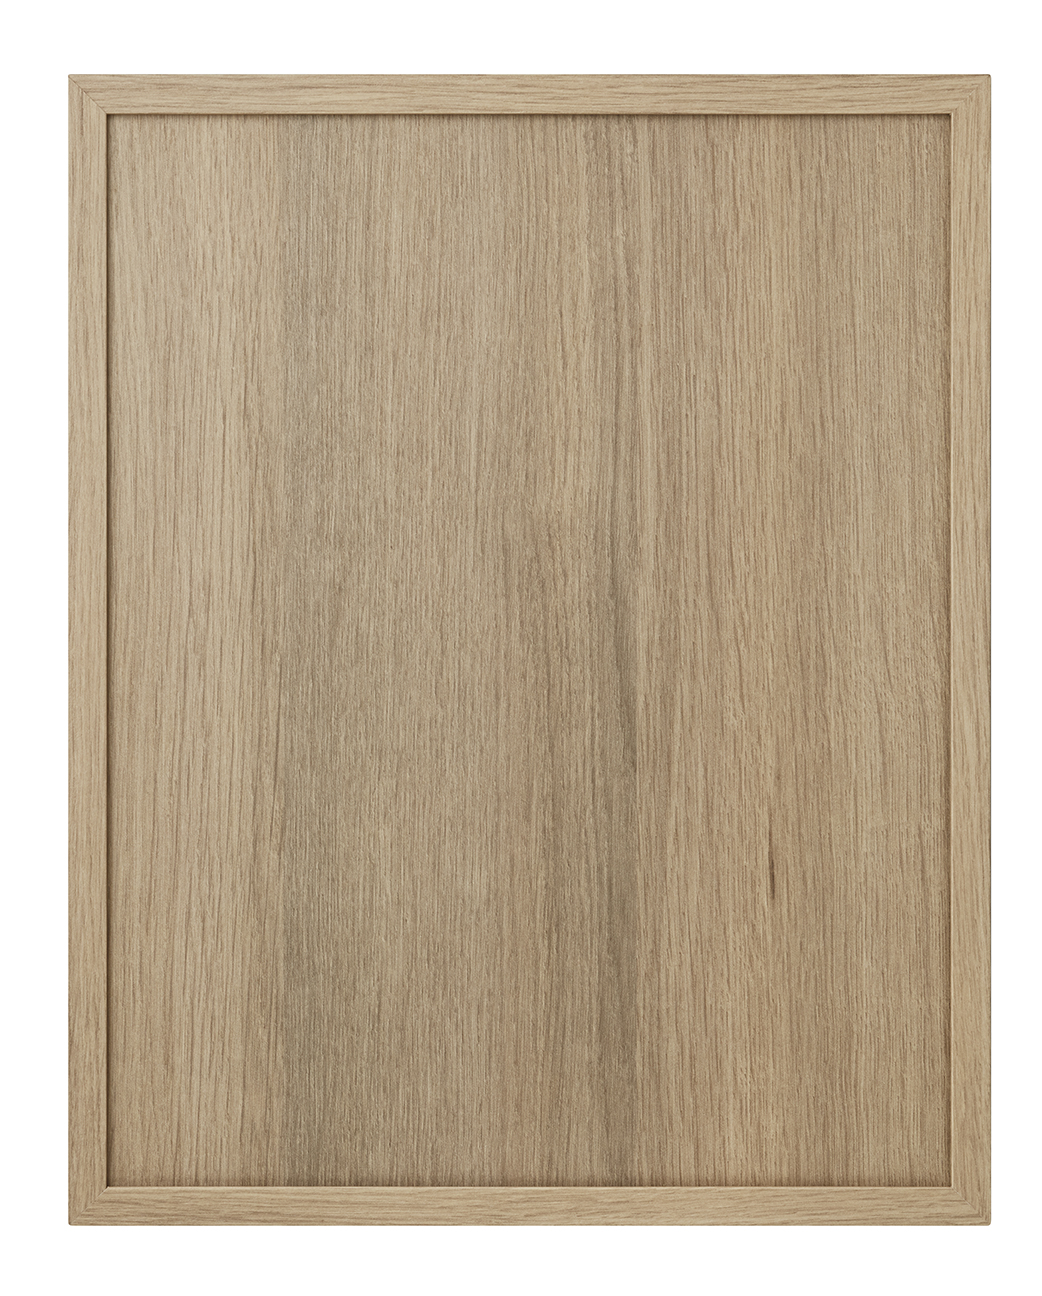 Kline cabinet door in Tafisa 585 Rhapsody